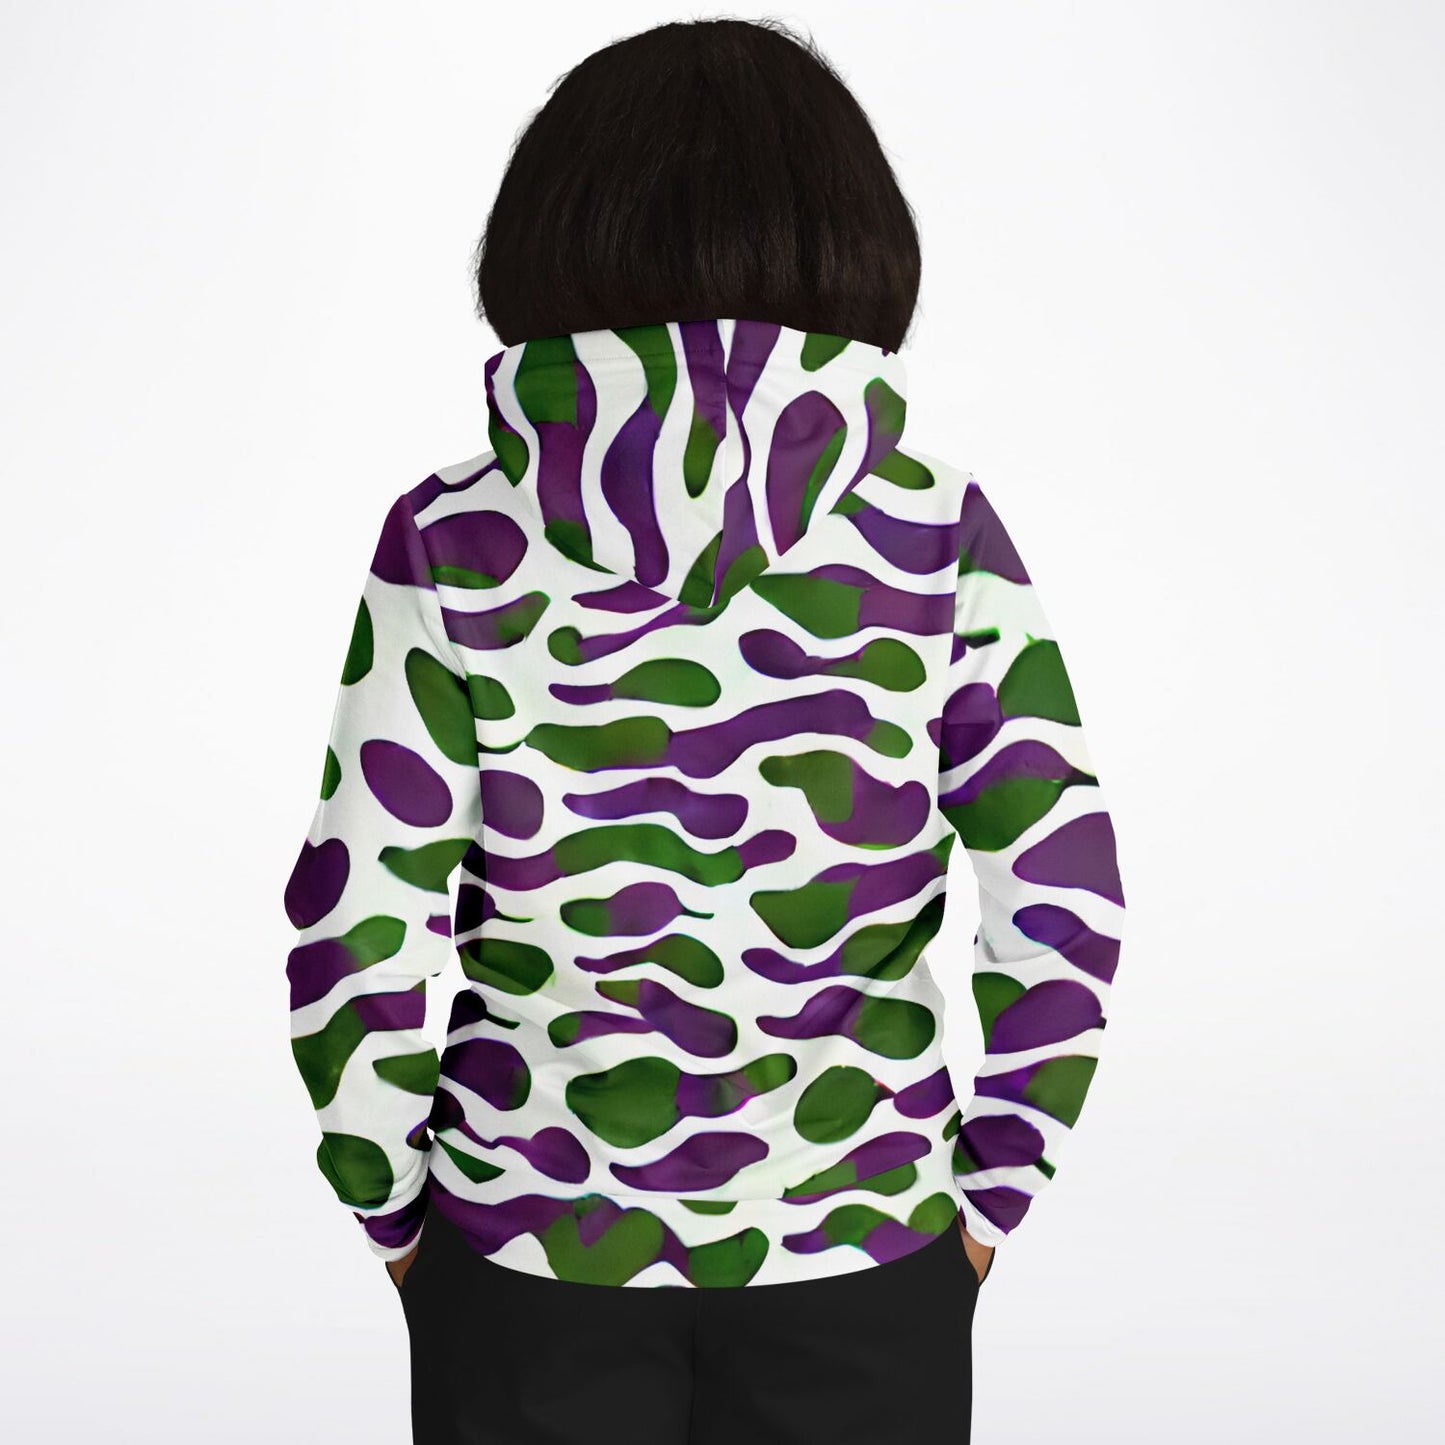 Camouflage Style, Camouflage Army, Camouflage Art, Fashion Hoodie